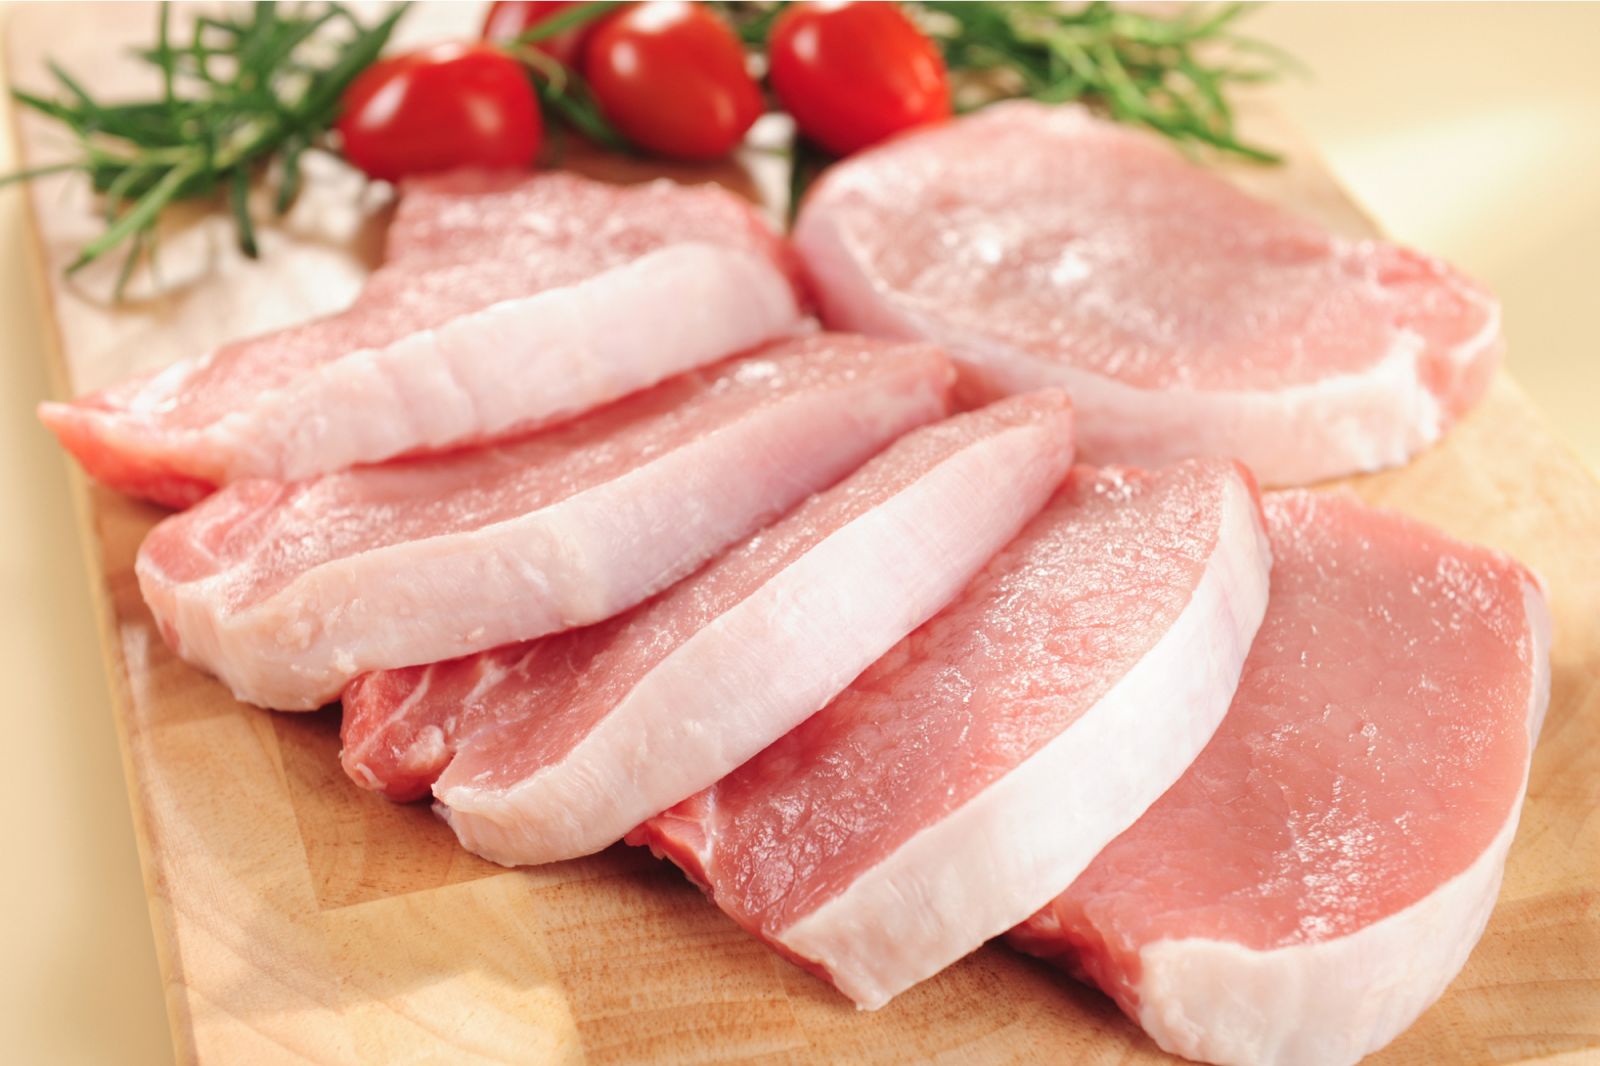 Trung bình trong 100g thịt heo có lượng calo khoảng 242 kcal